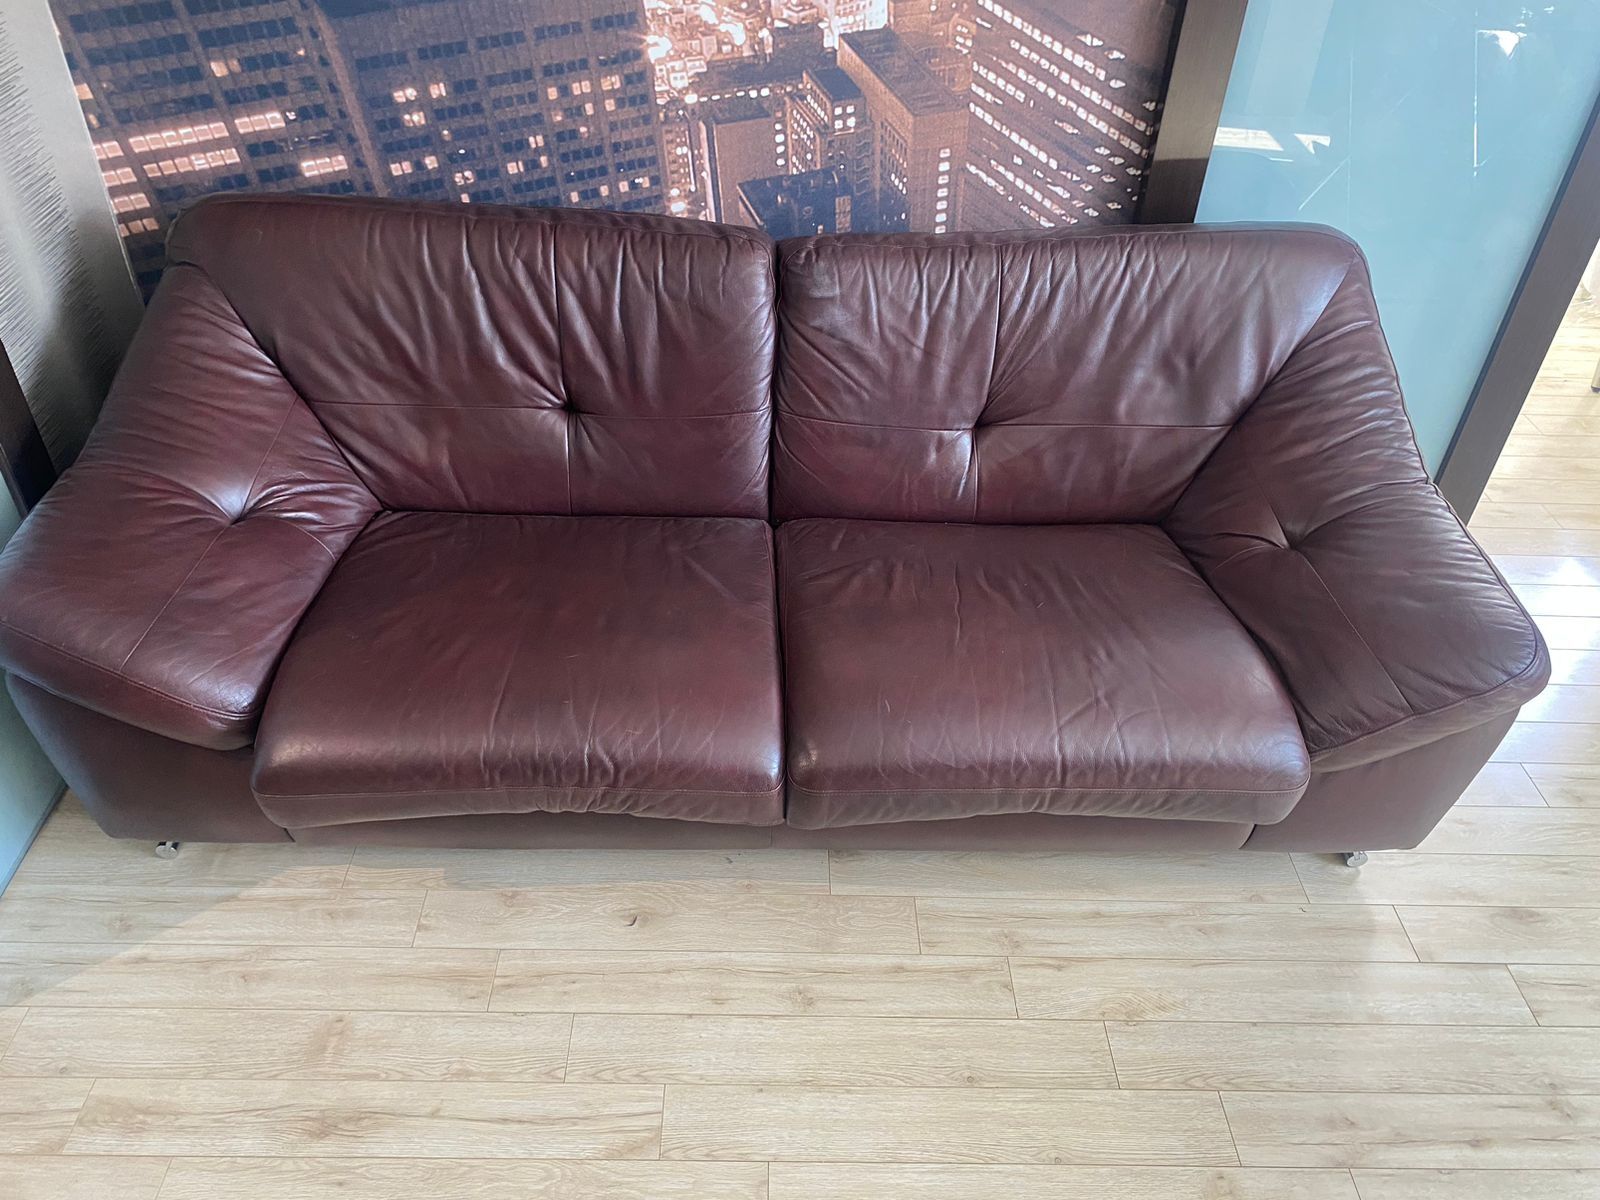 Продается диван с креслом вместе